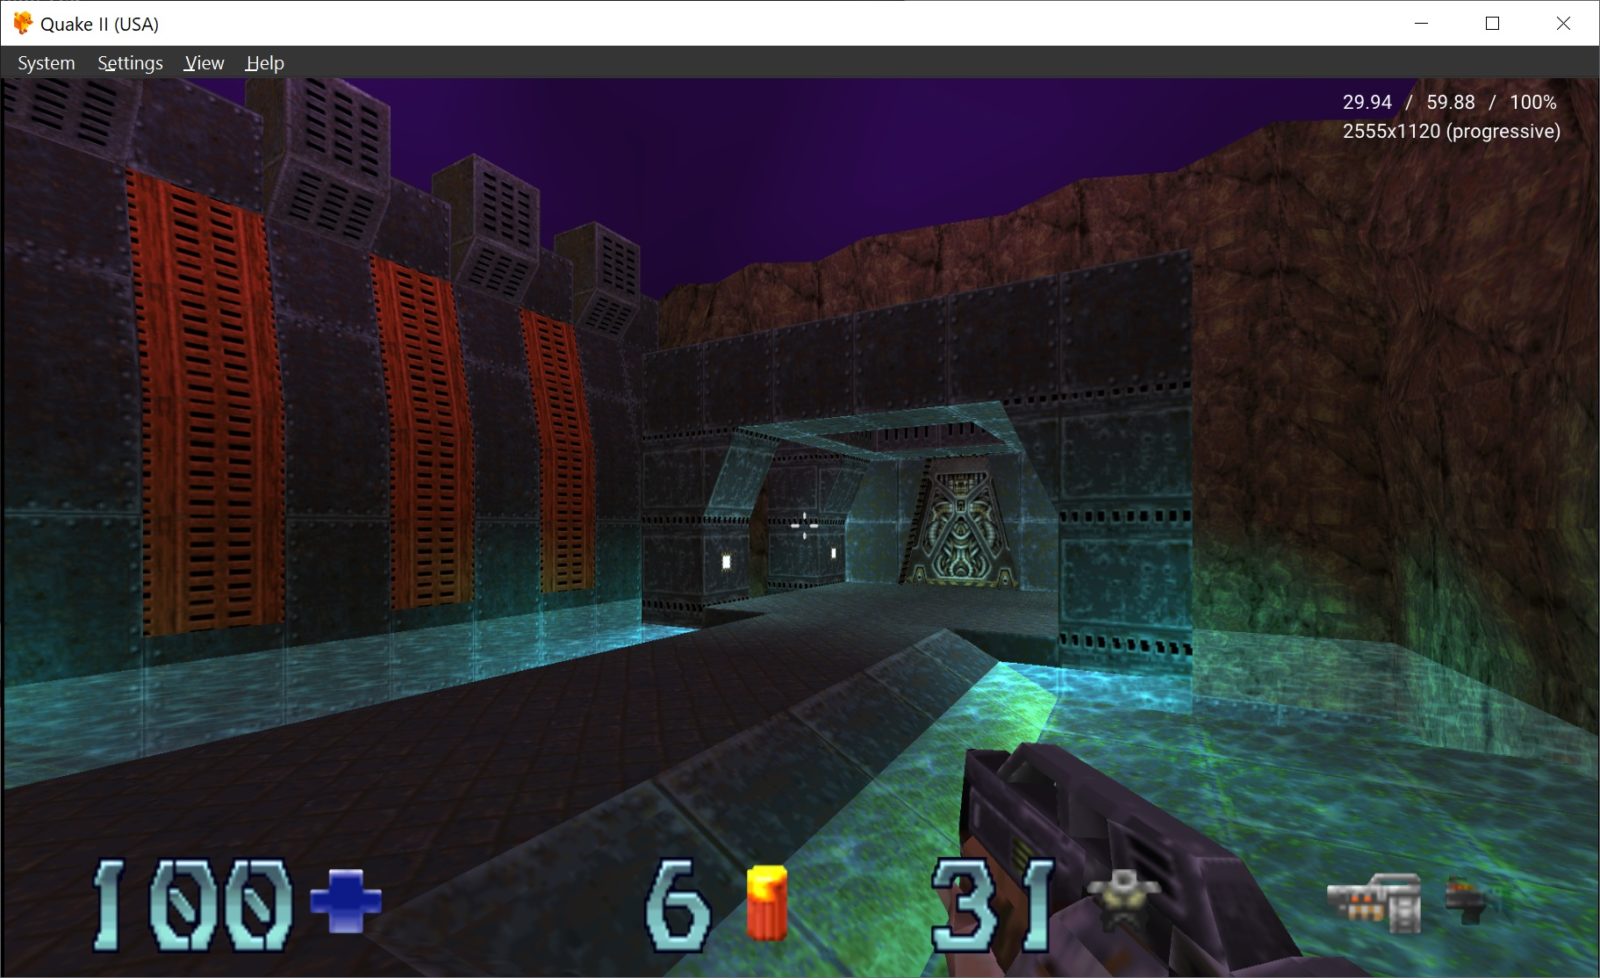 DuckStation. Quake II. Скриншот взят с официального сайта